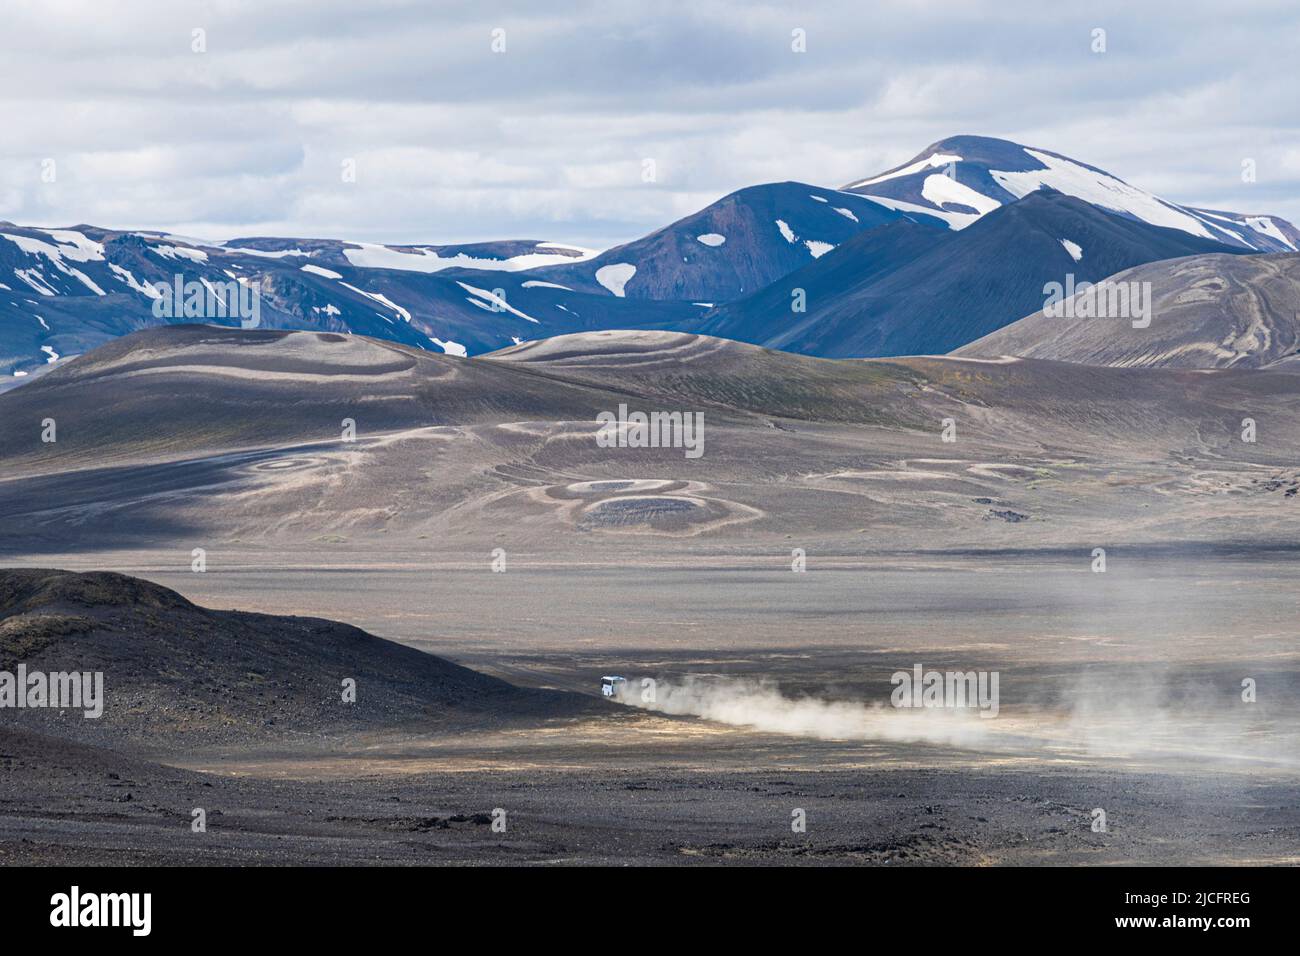 Der Laugavegur-Wanderweg ist die berühmteste mehrtägige Trekkingtour in Island. Landschaft aufgenommen aus dem Gebiet um Landmannalaugar, Ausgangspunkt des Fernwanderweges im Hochland Islands. Öffentlicher Bus von Reykjavik. Stockfoto